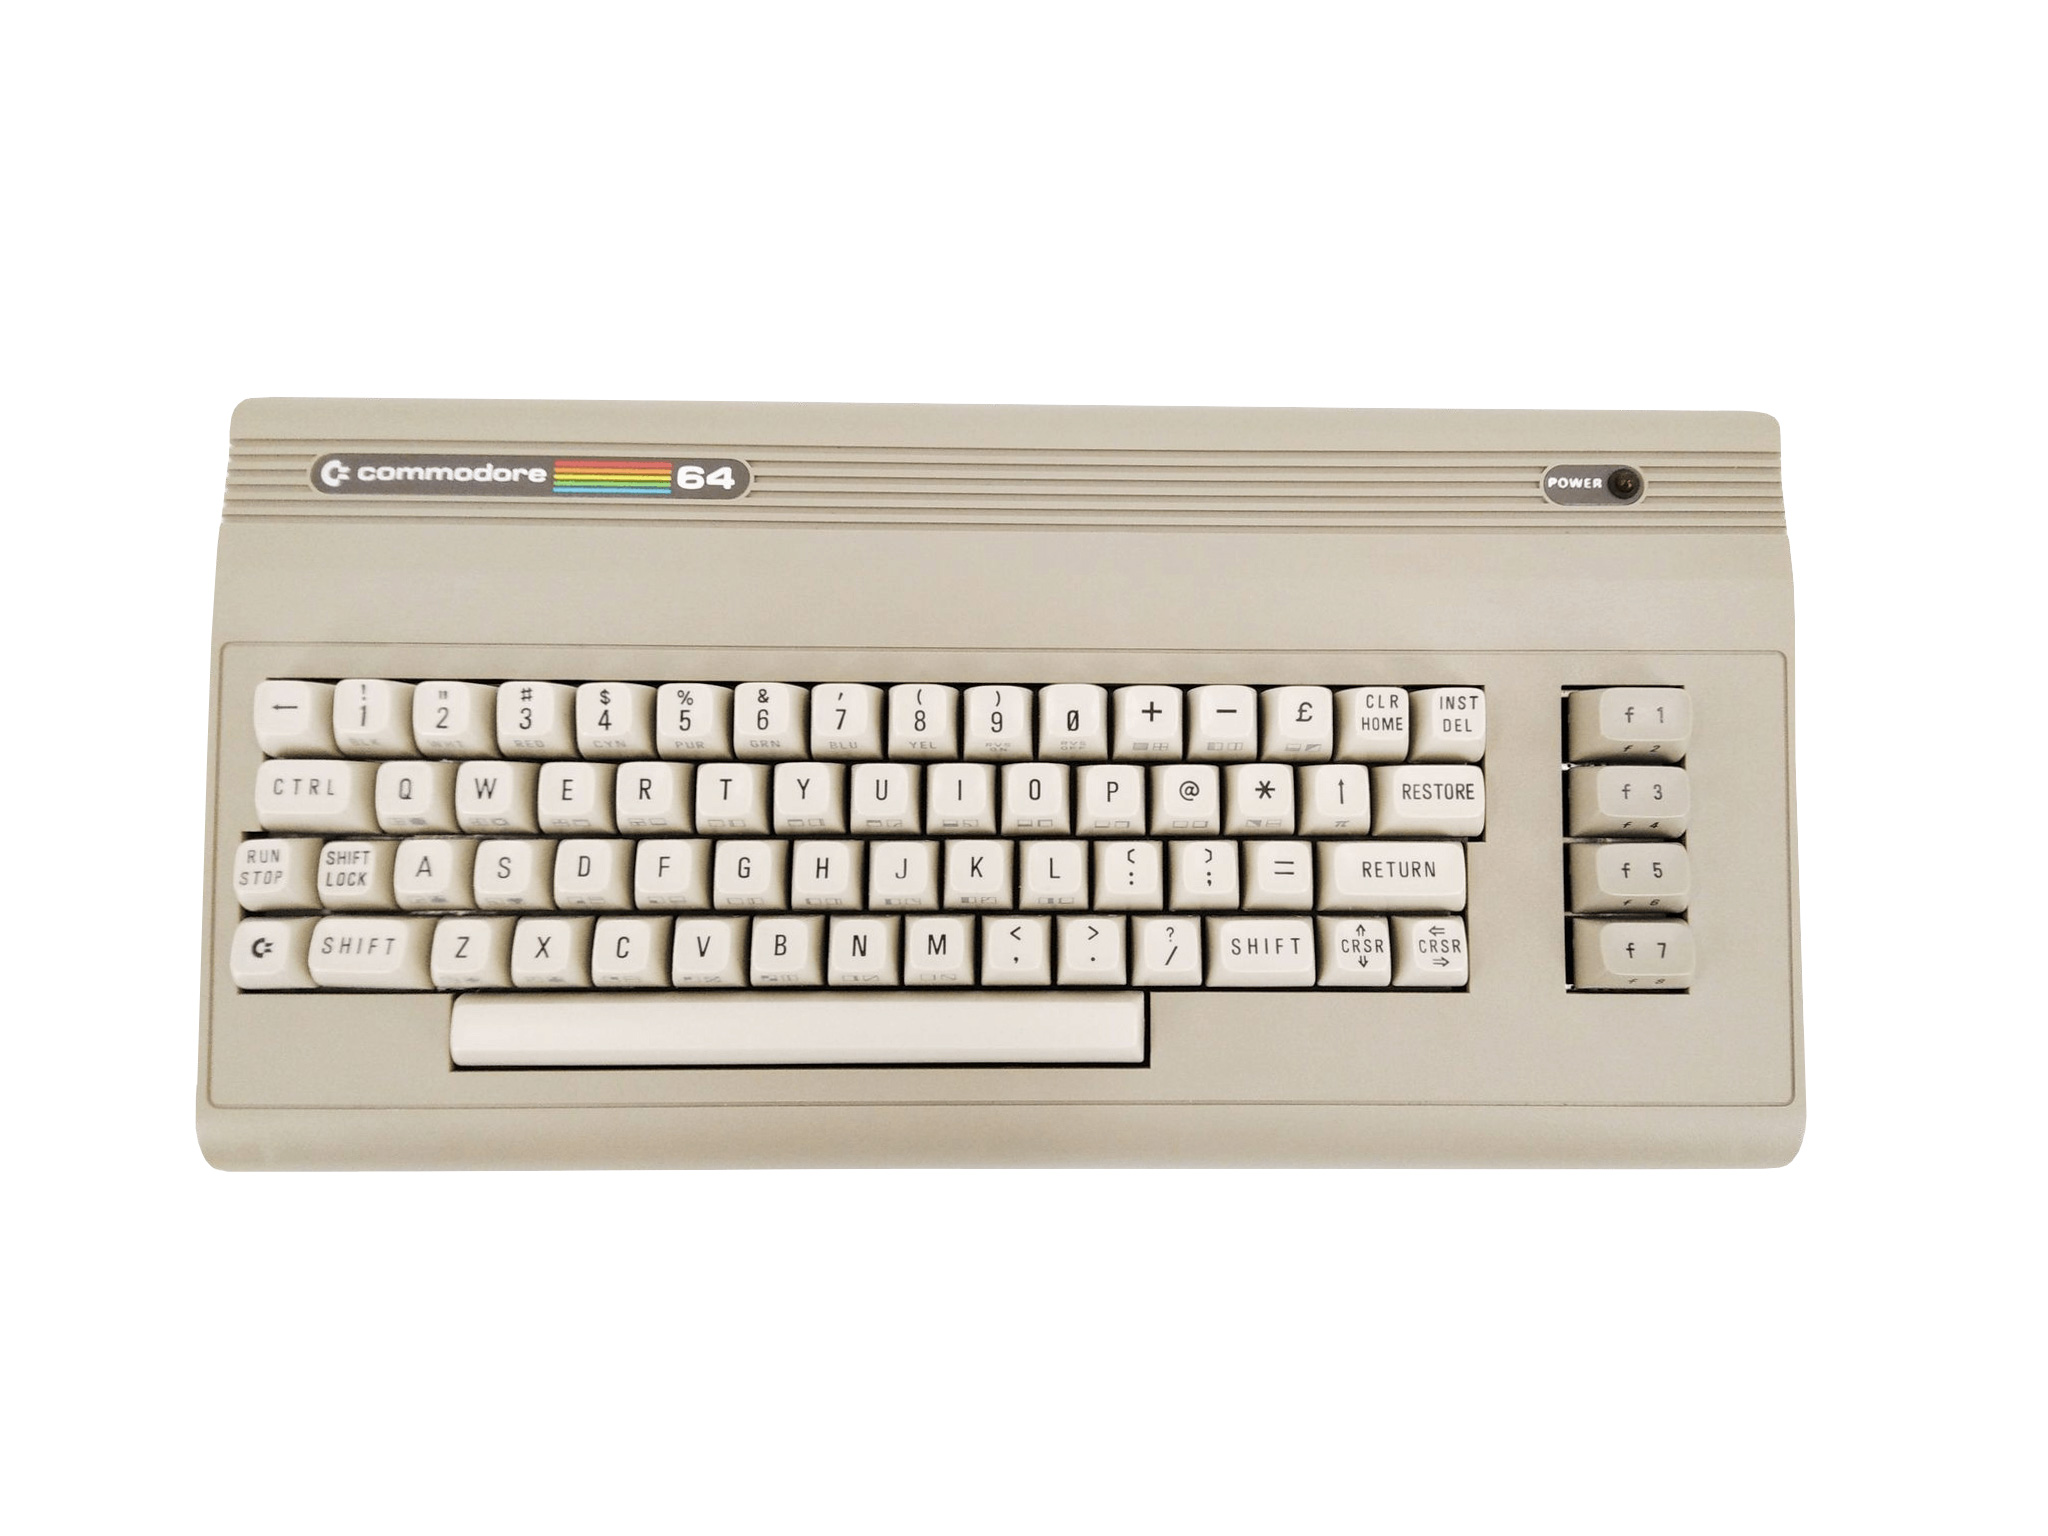 HomeComputerMuseum - Commodore 64 Aldi